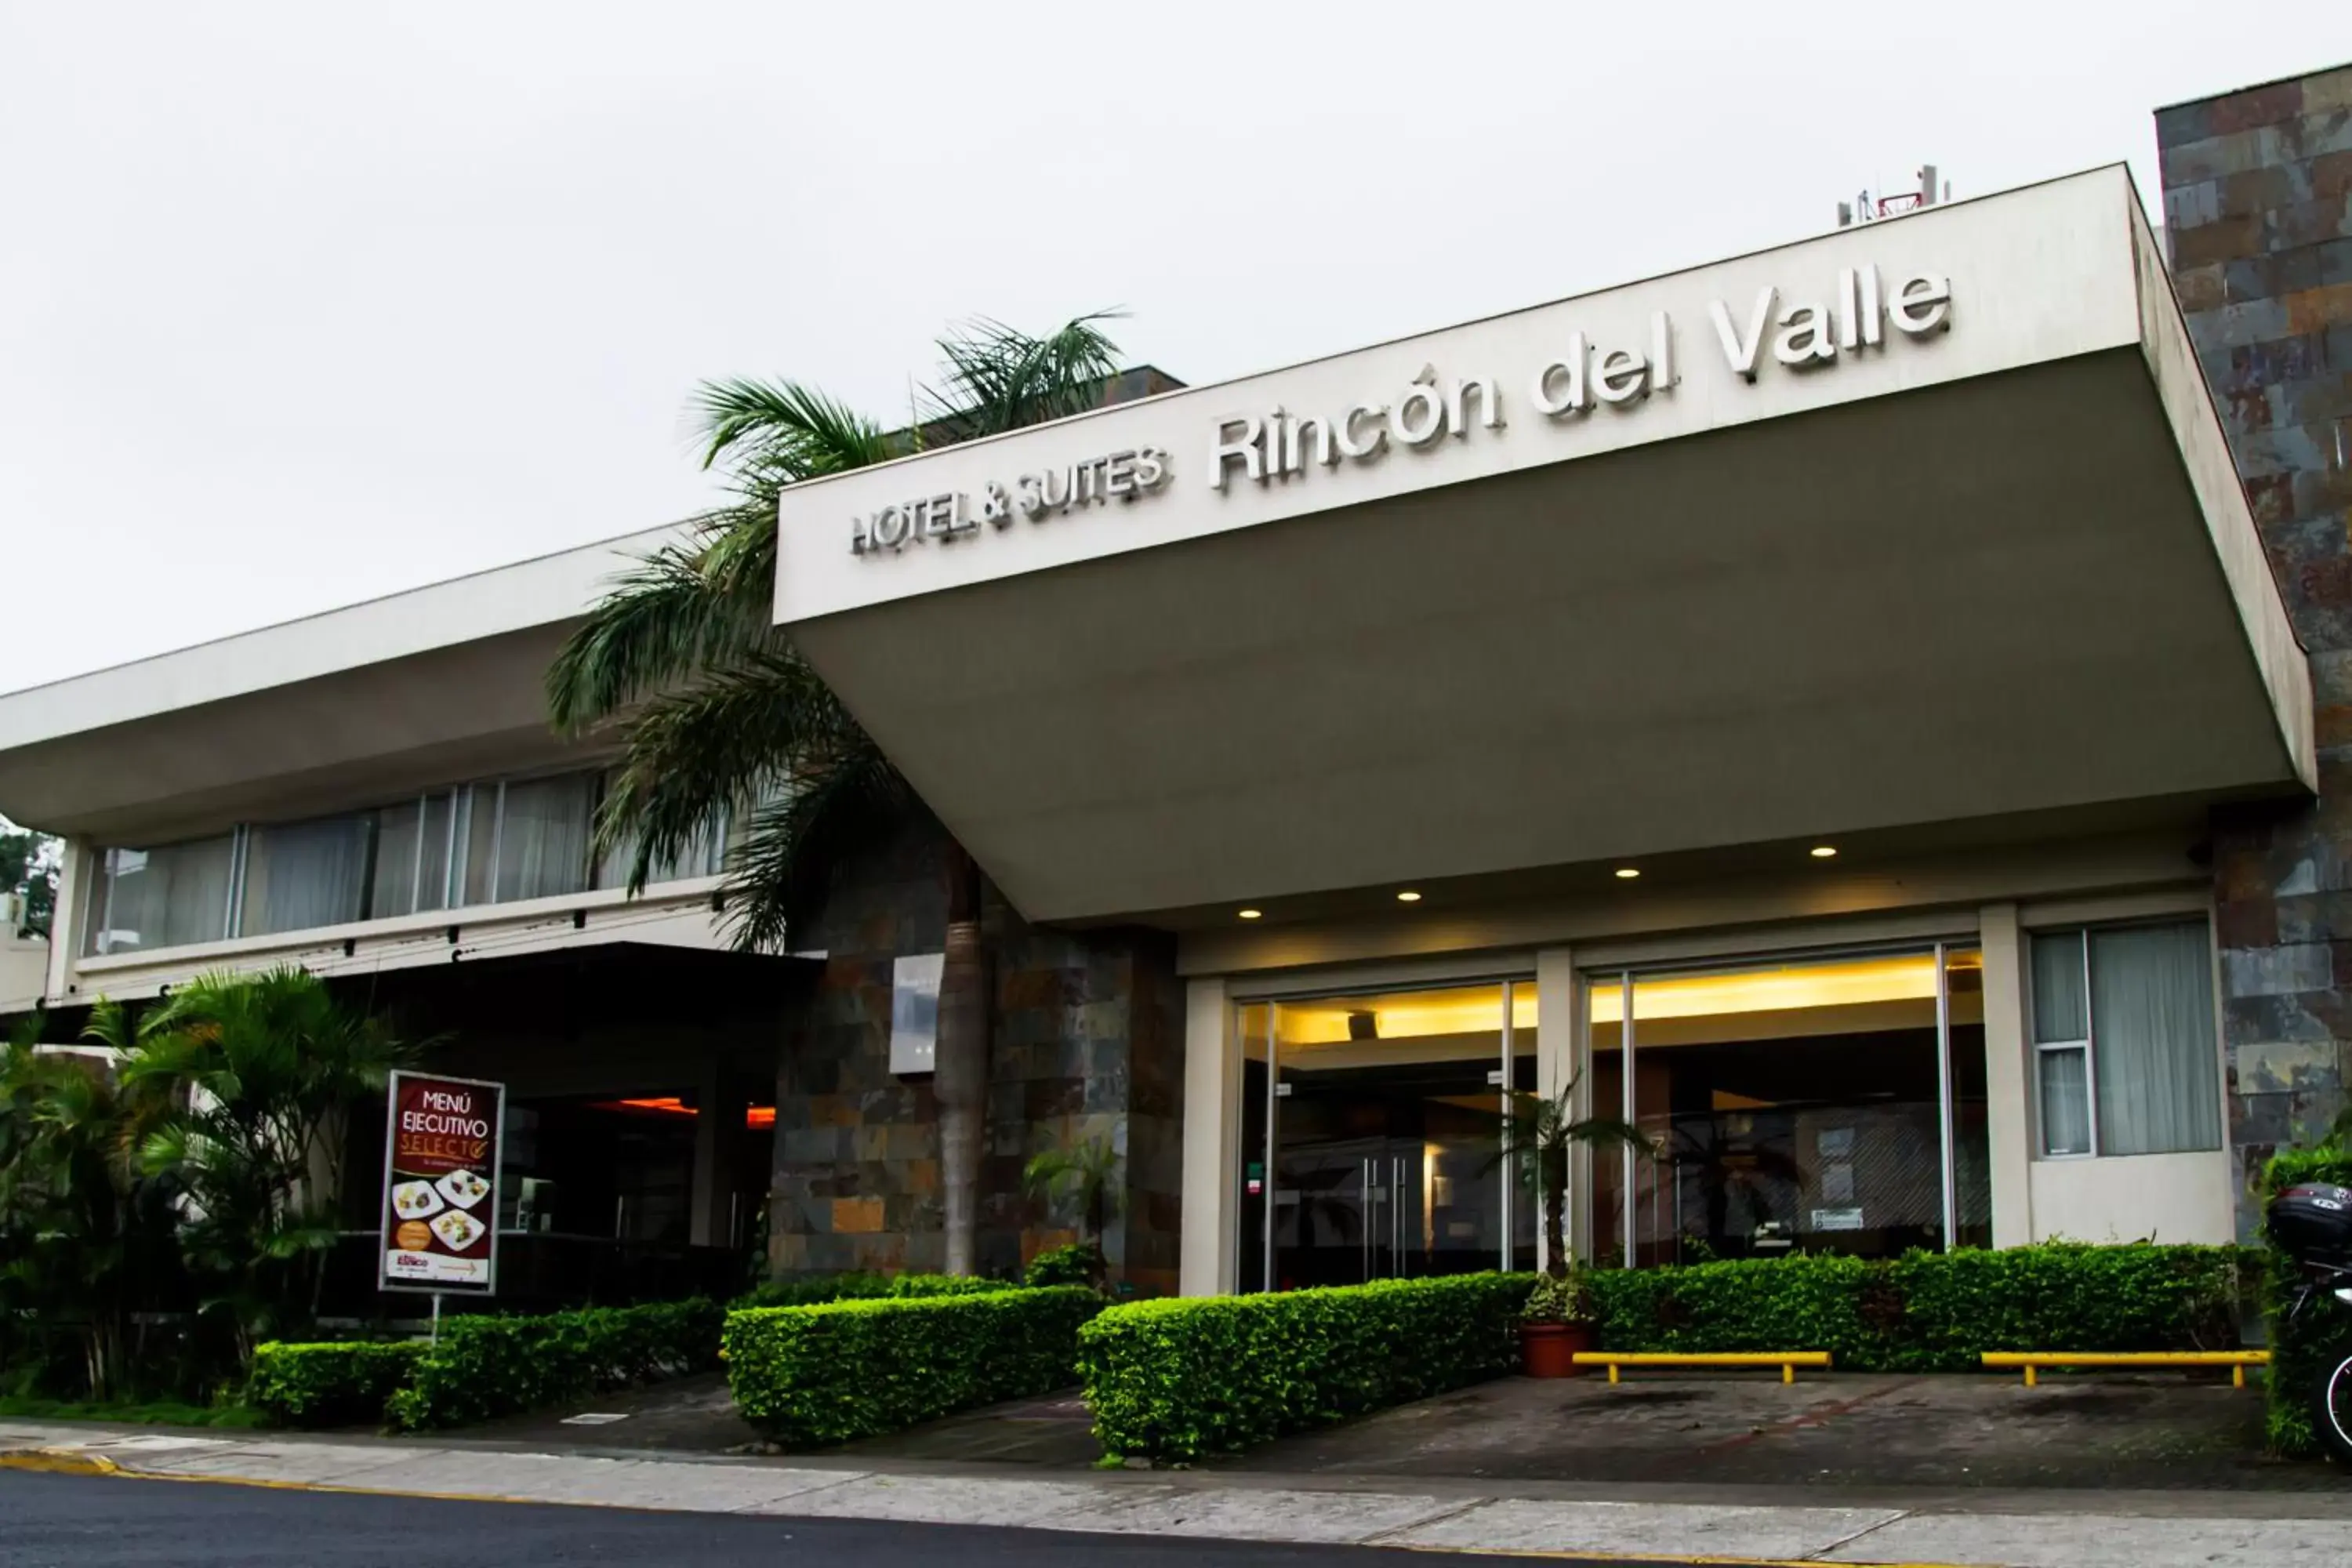 Facade/entrance, Property Building in Rincon del Valle Hotel & Suites